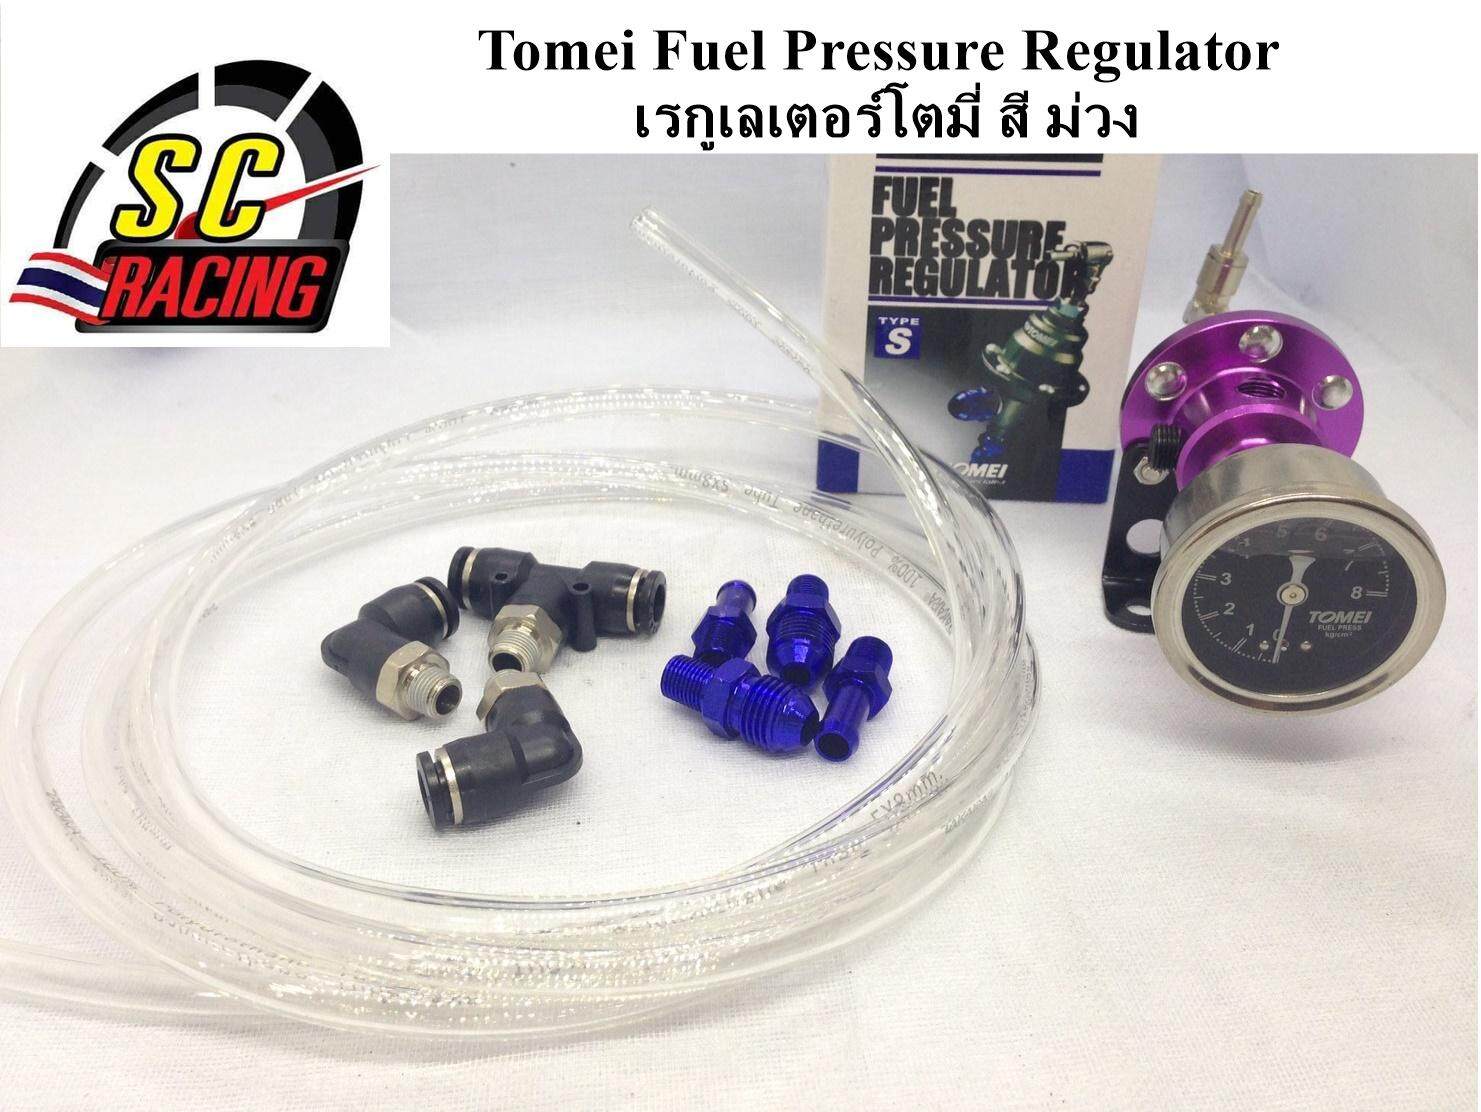 เรกูเลเตอร์ โตมี่ชุดใหญ่ เรกูเรต เรกกูเรต เรกูเรเตอร์ Tomei Fuel Pressure Regulator มี 7 สีให้เลือก